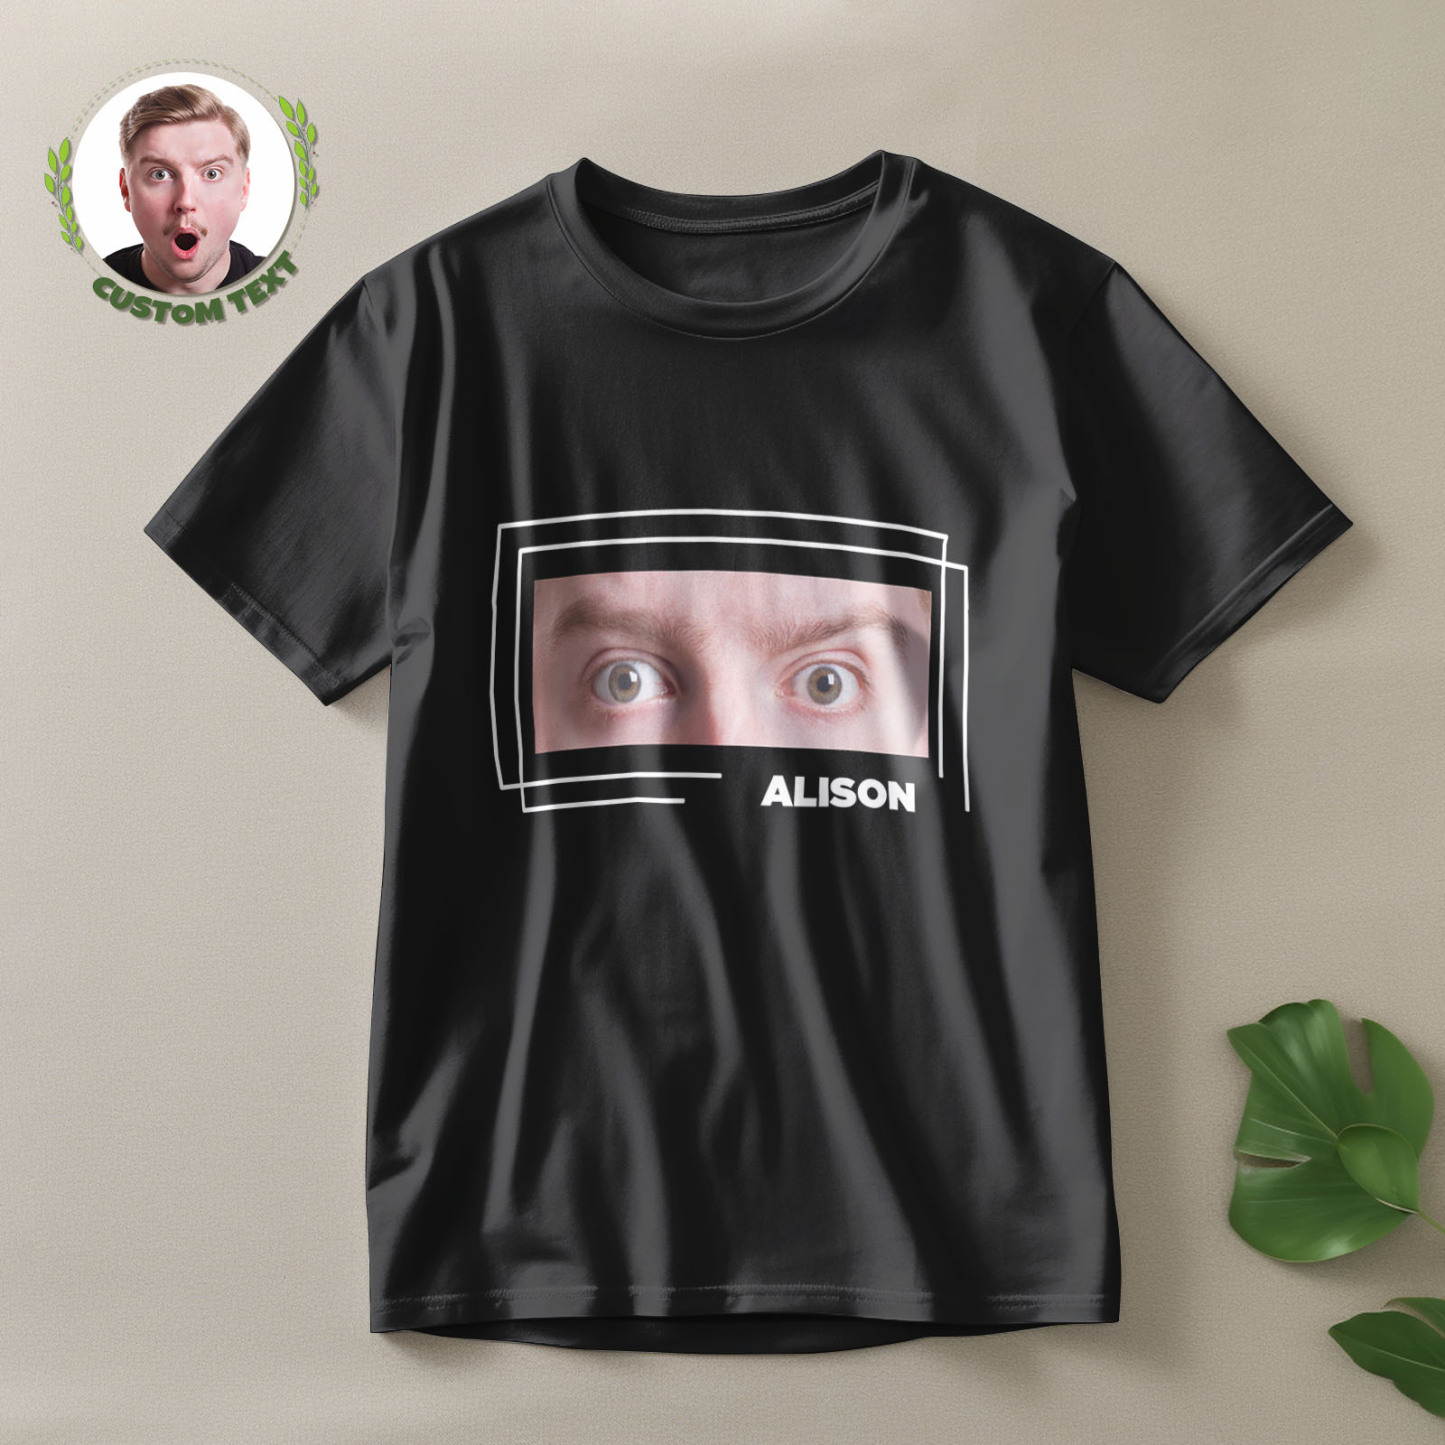 T-shirt Mit Individuellen Augen Und Namen, Lustiges T-shirt Mit Großen Augen, Geschenk Für Paare - GesichtSocken